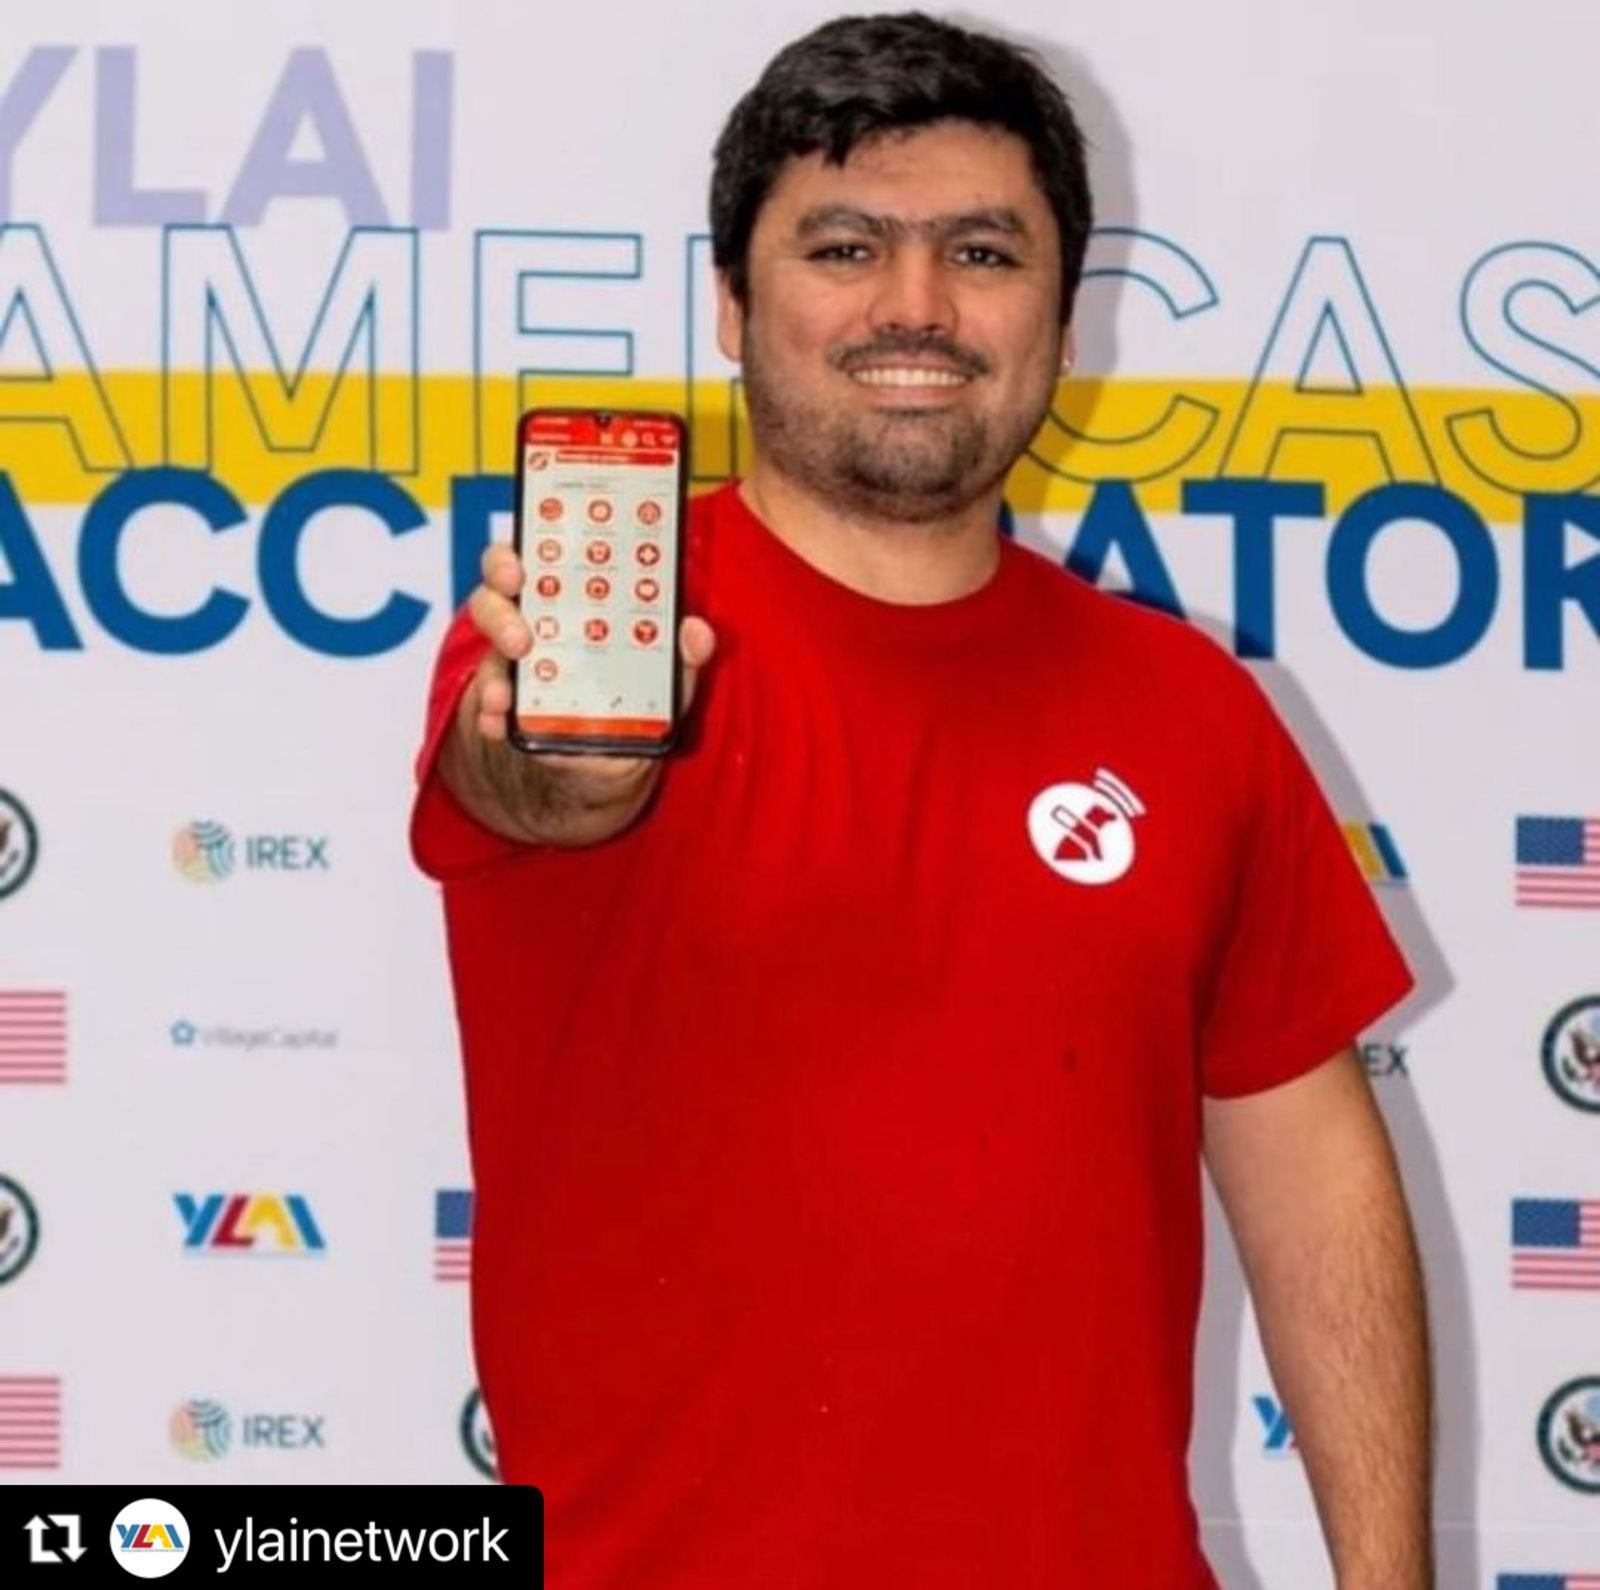 Retrato de René Espinoza, CEO de Lazarillo, sosteniendo un celular con la app Lazarillo abierta.